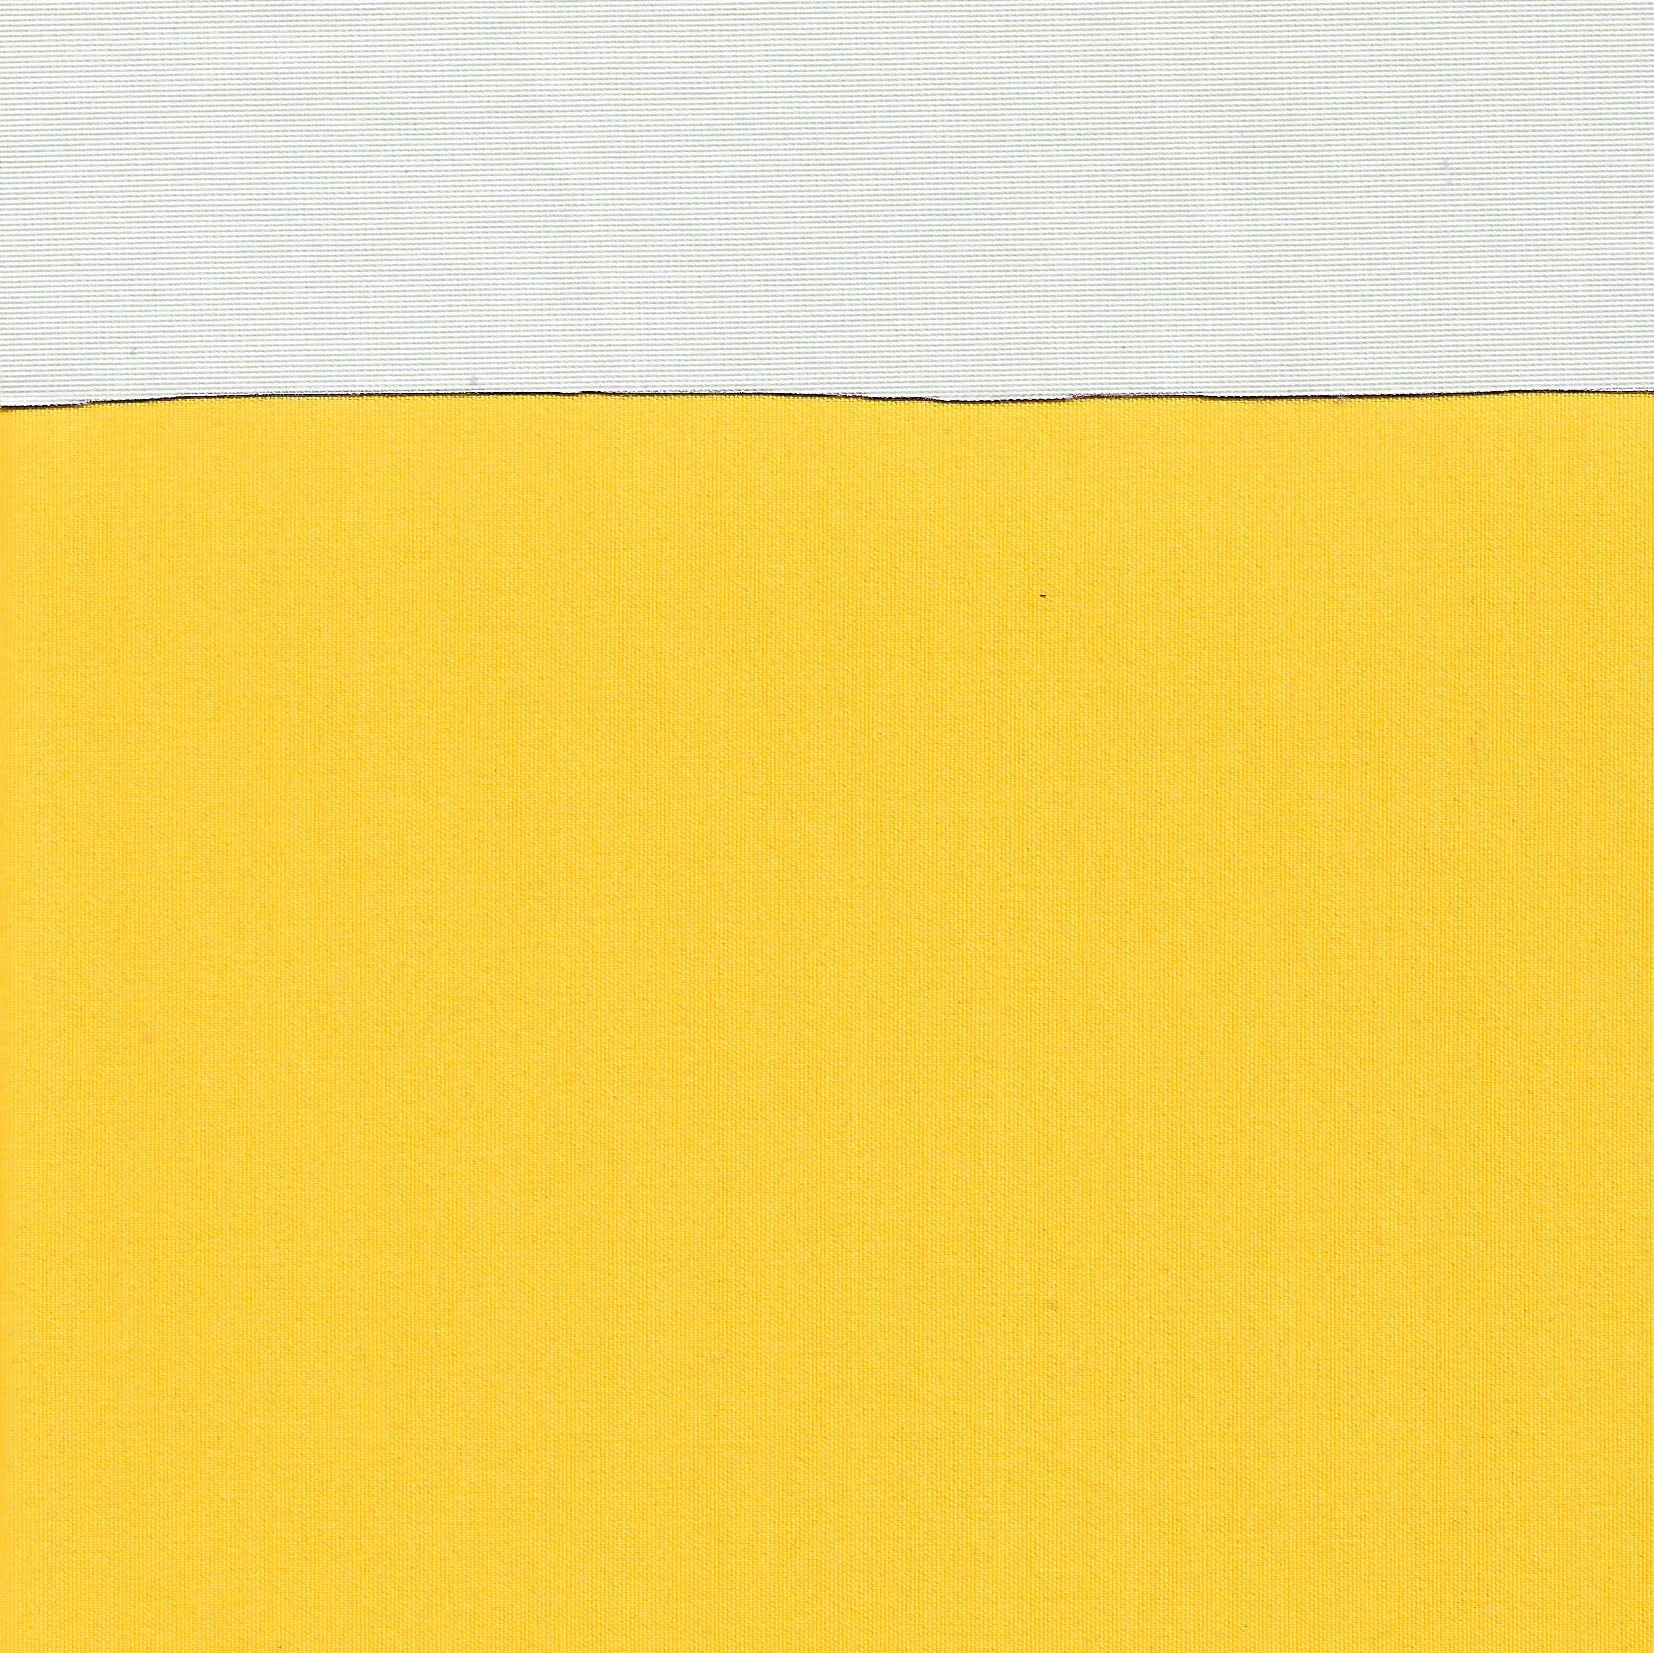 Softschell žlutý letní , 0,55x1,4m